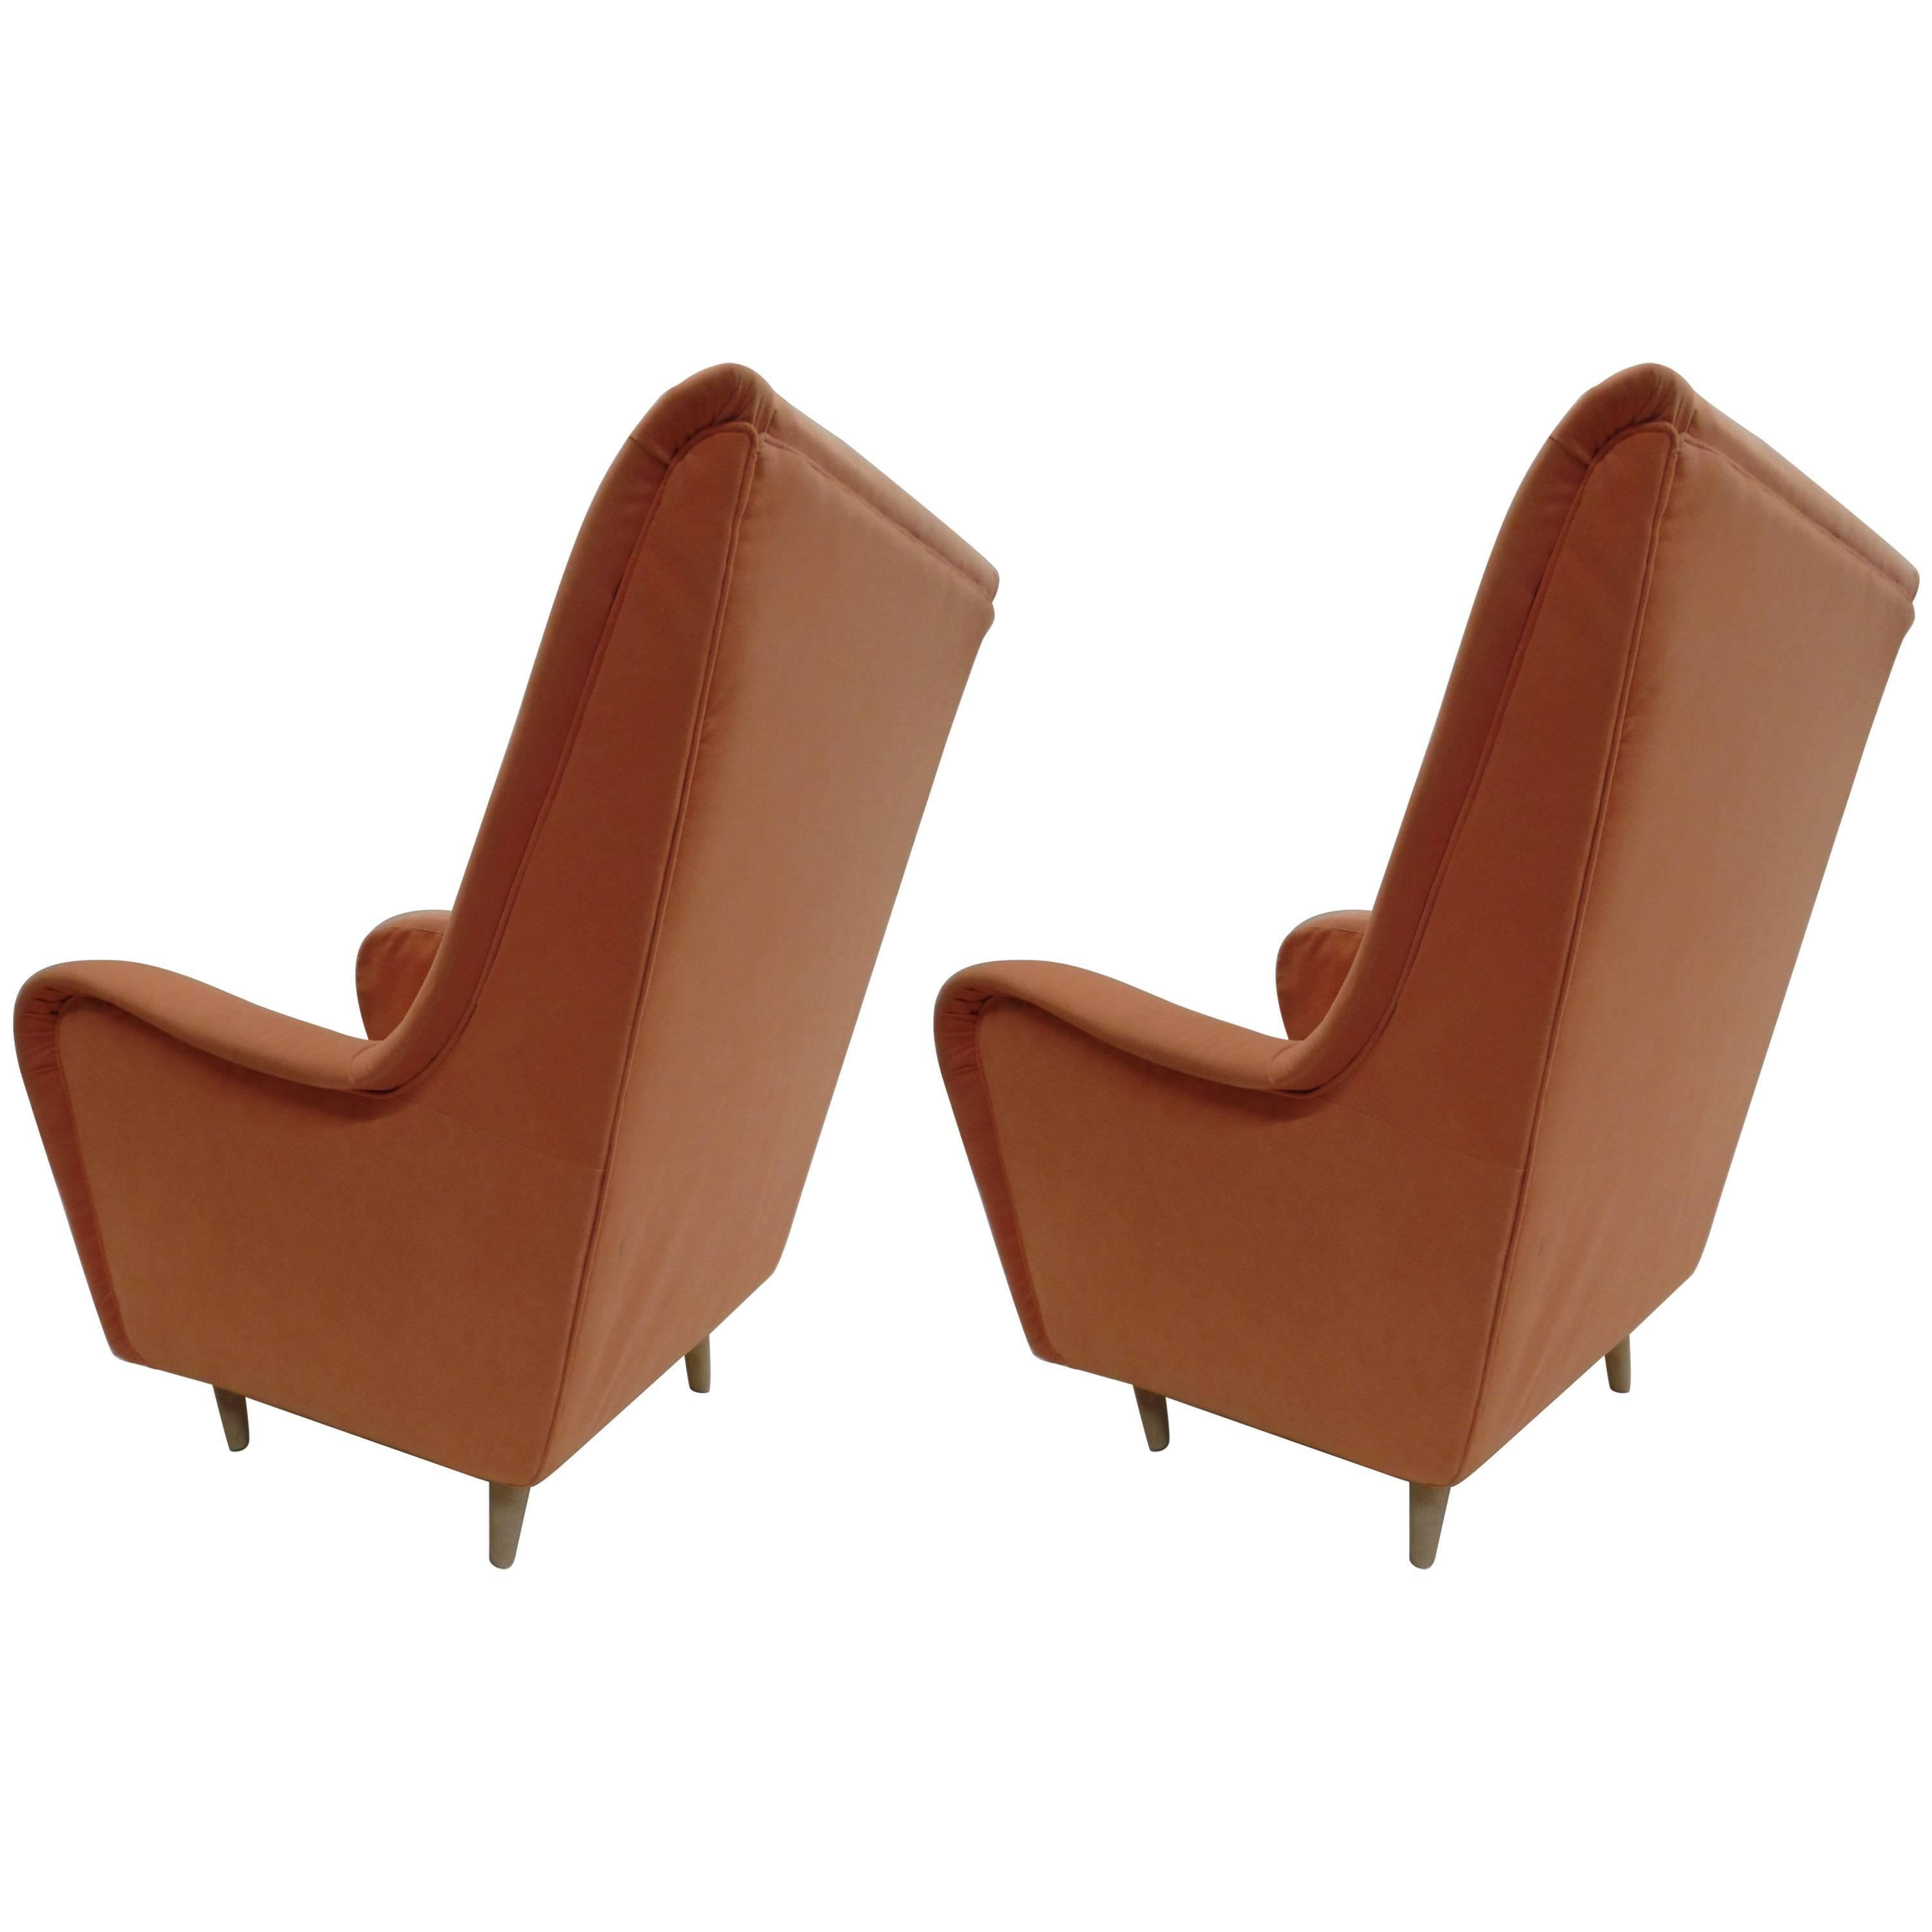 Elegant Paire de chaises longues à dossier haut / Wingback / Elegant Pair of Italian Mid-Century Modern Wingback / Hi Back Lounge Chairs /  fauteuils de Paolo Buffa. Ces chaises sont grandes, profondes et confortables ; elles ont des lignes